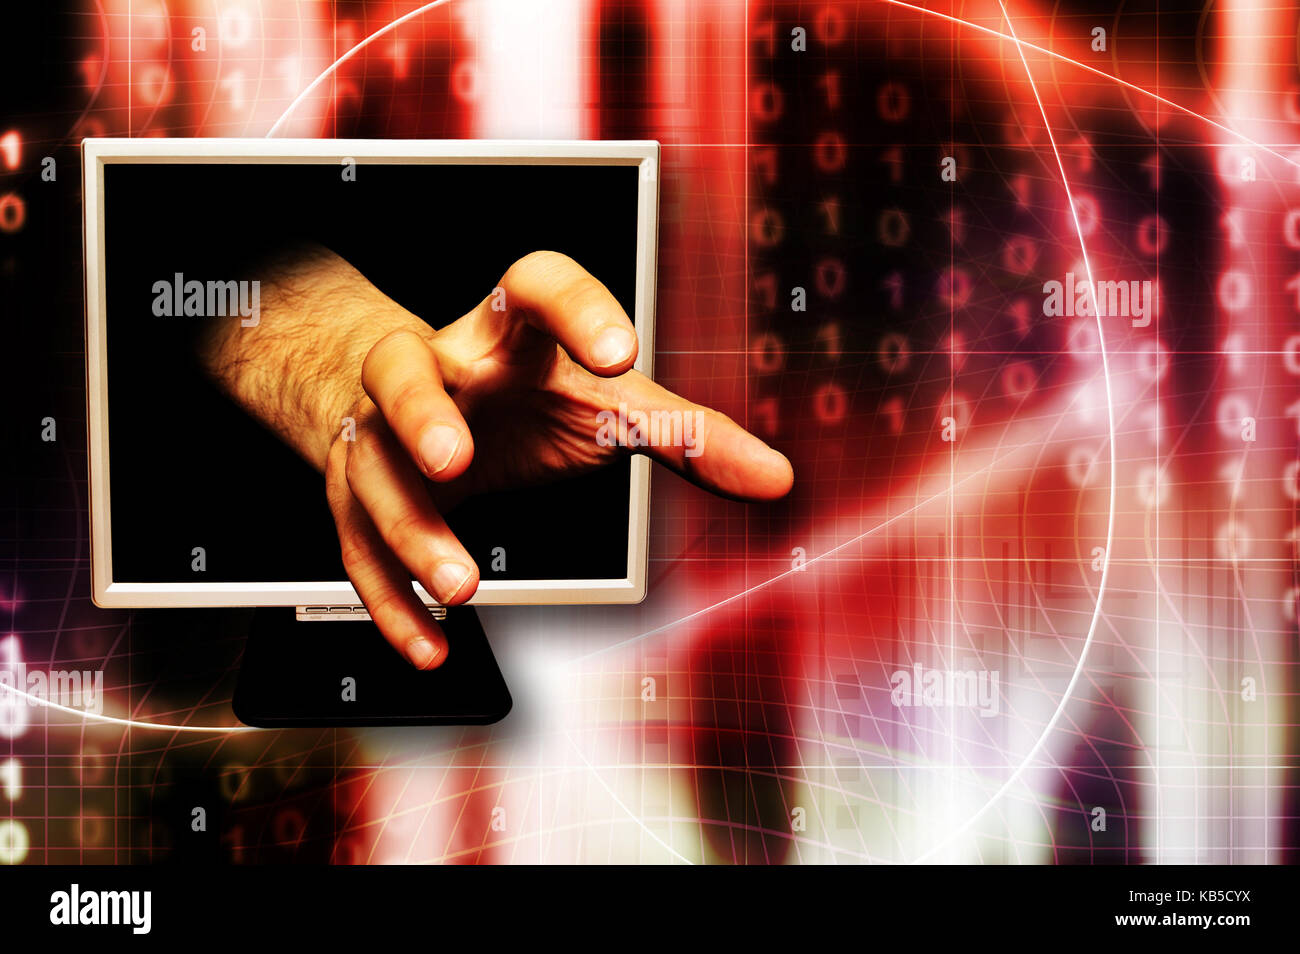 La main qui sort de l'écran d'un ordinateur comme pour attraper quelque chose, le vol d'identité et de la criminalité sur internet concept Banque D'Images